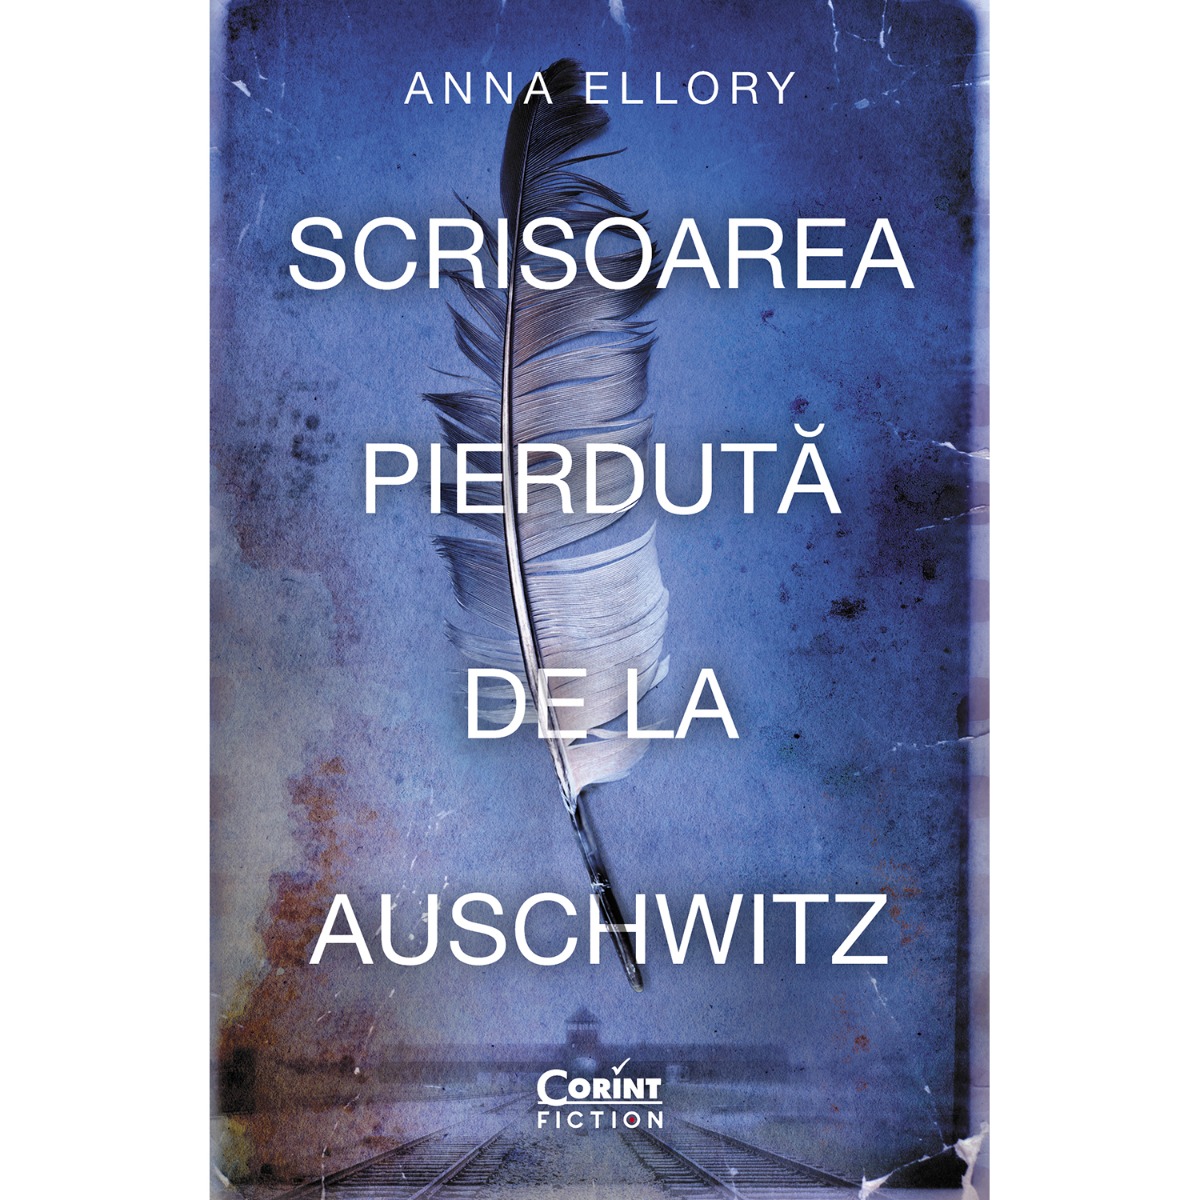 Scrisoarea pierduta de la Auschwitz, Anna Ellory